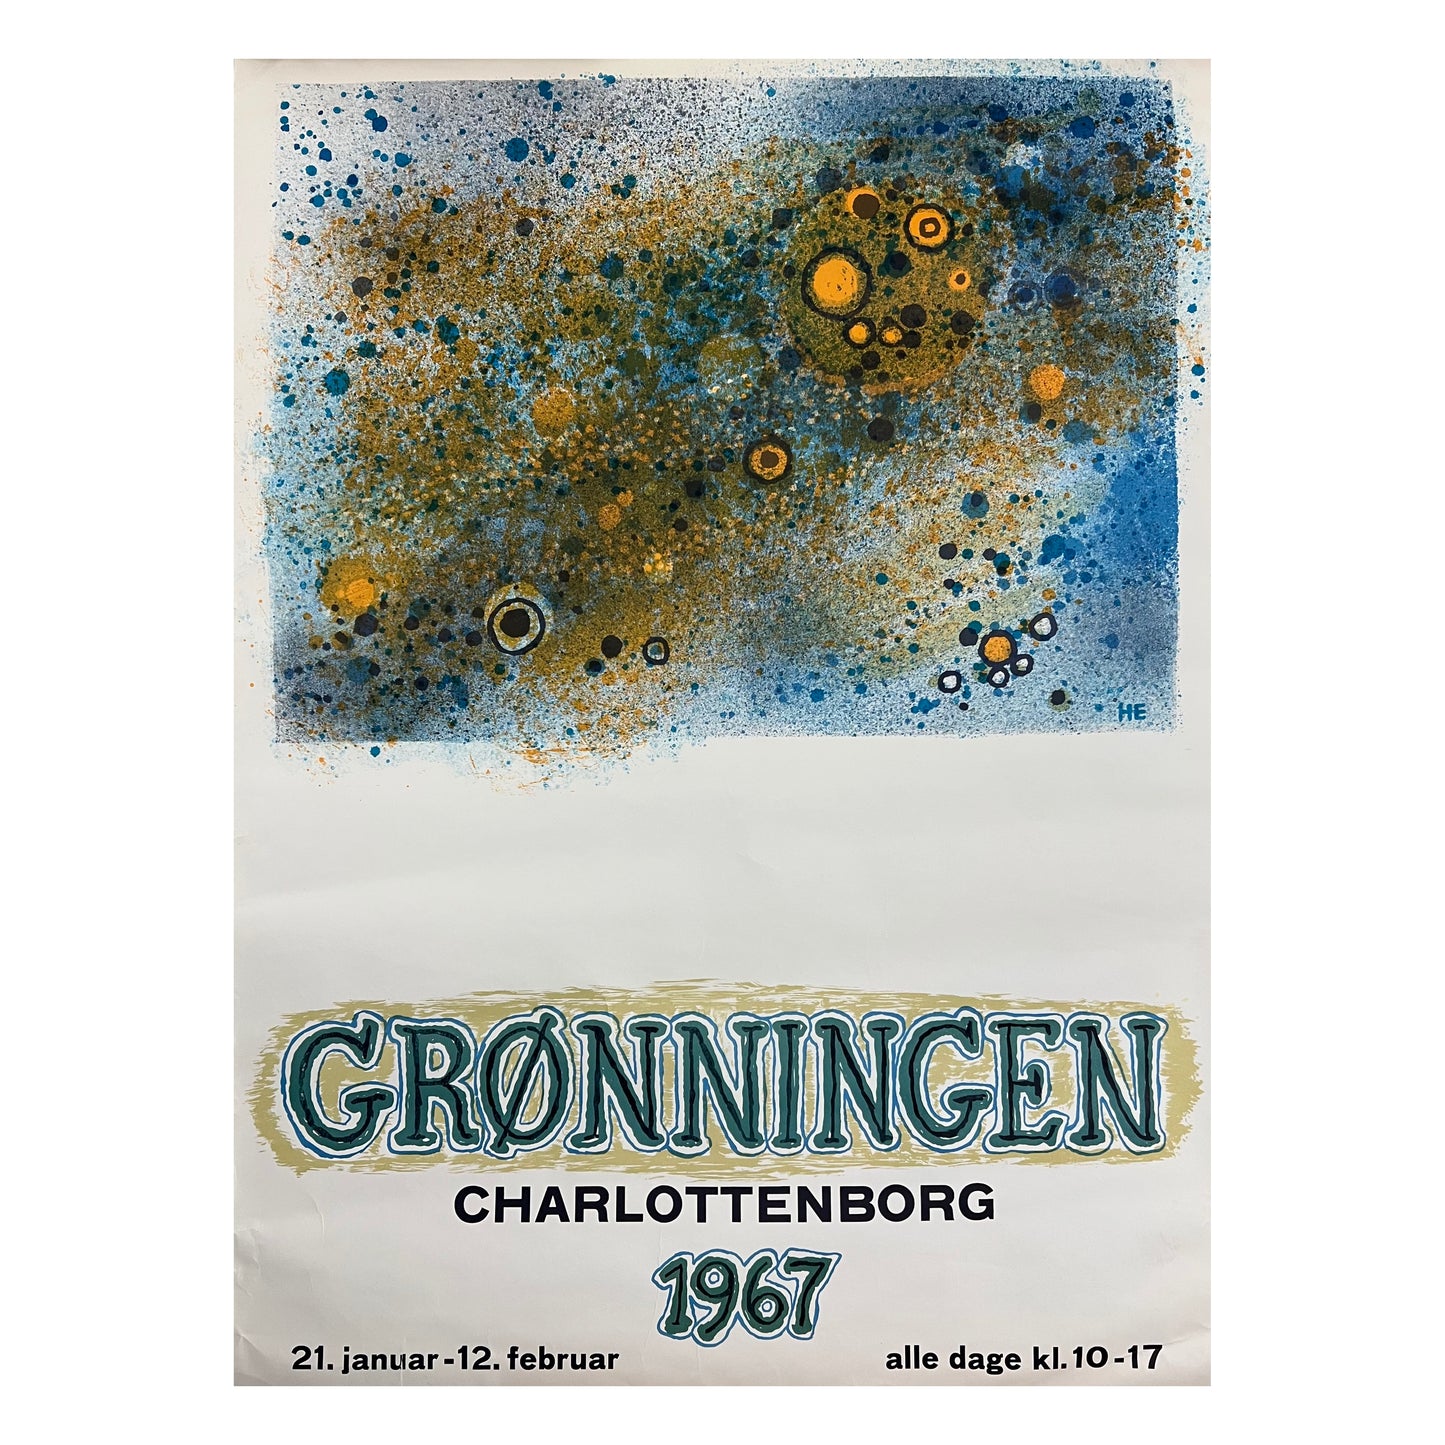 Helge Ernst. “Grønningen”, 1967